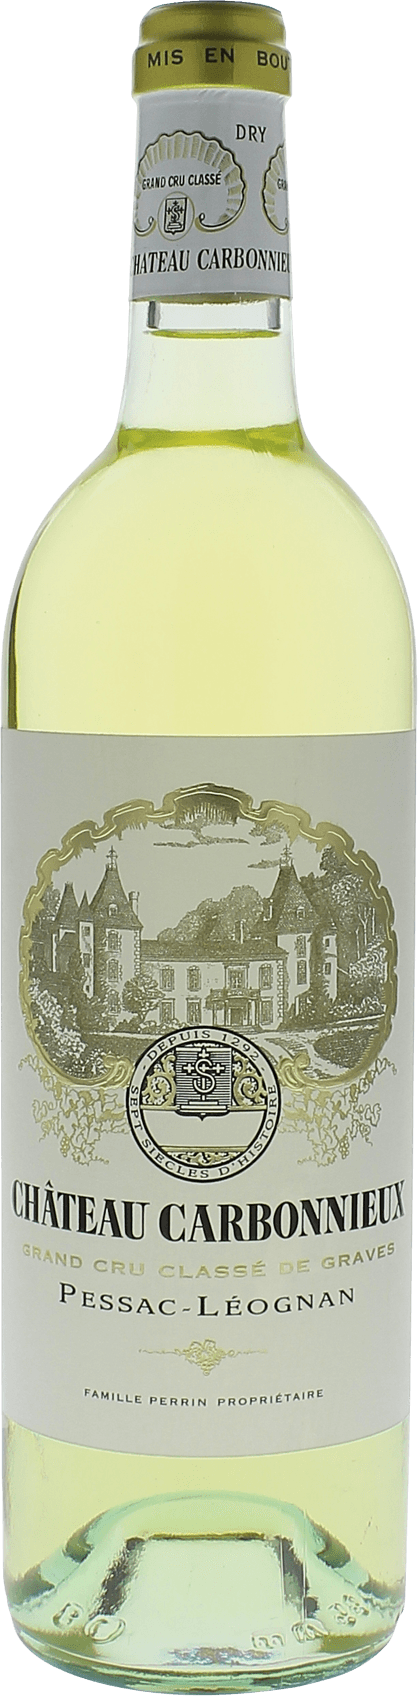 Carbonnieux blanc graves 2014 cru class Pessac-Lognan, Bordeaux blanc